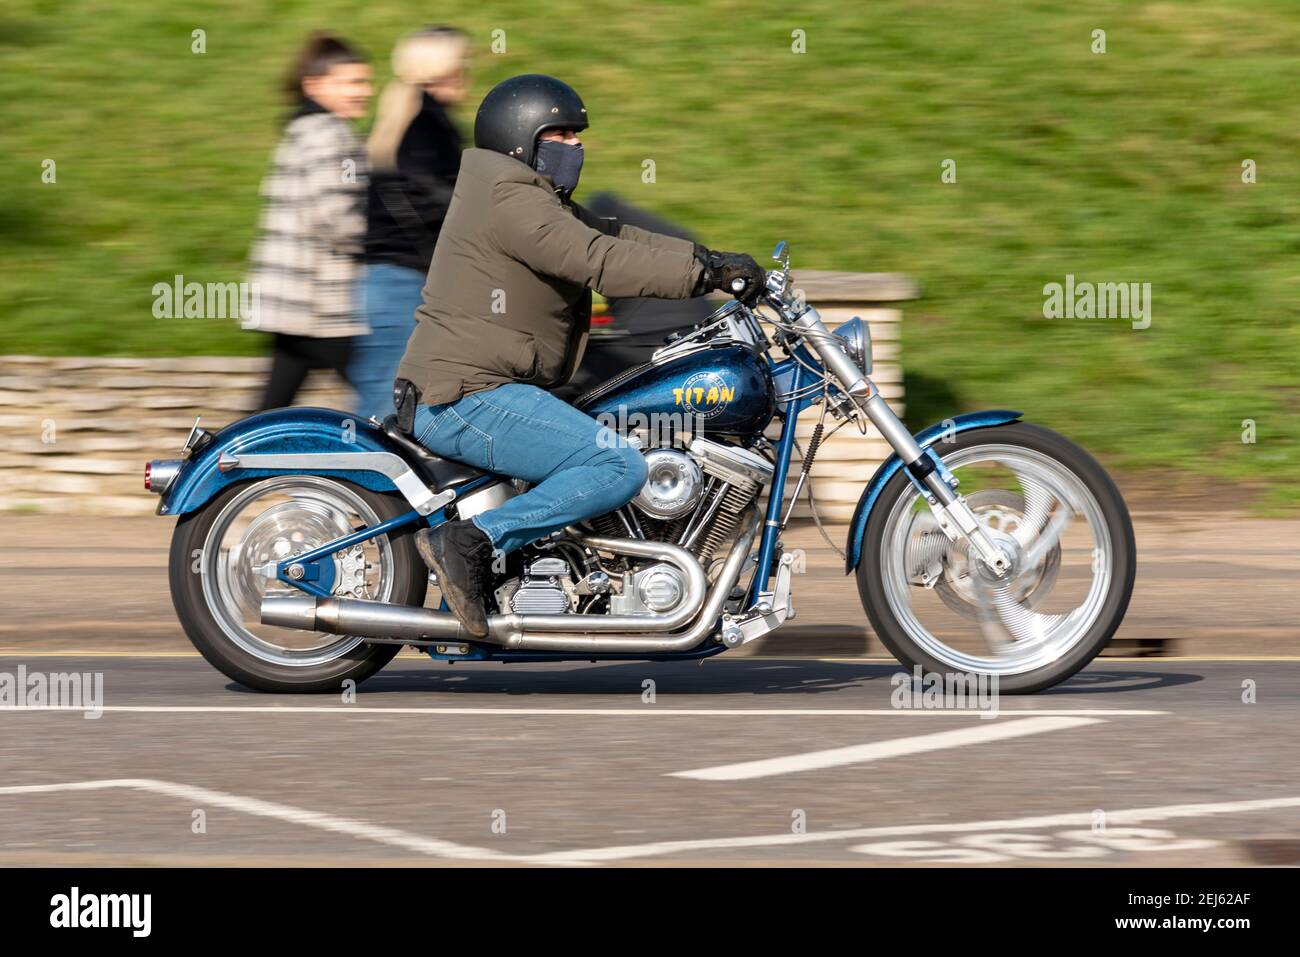 Titan Motorcycle Company of America S&S Super Motorbike étant monté à Southend on Sea, Essex, Royaume-Uni, par une journée ensoleillée, pendant le confinement de la COVID 19 Banque D'Images